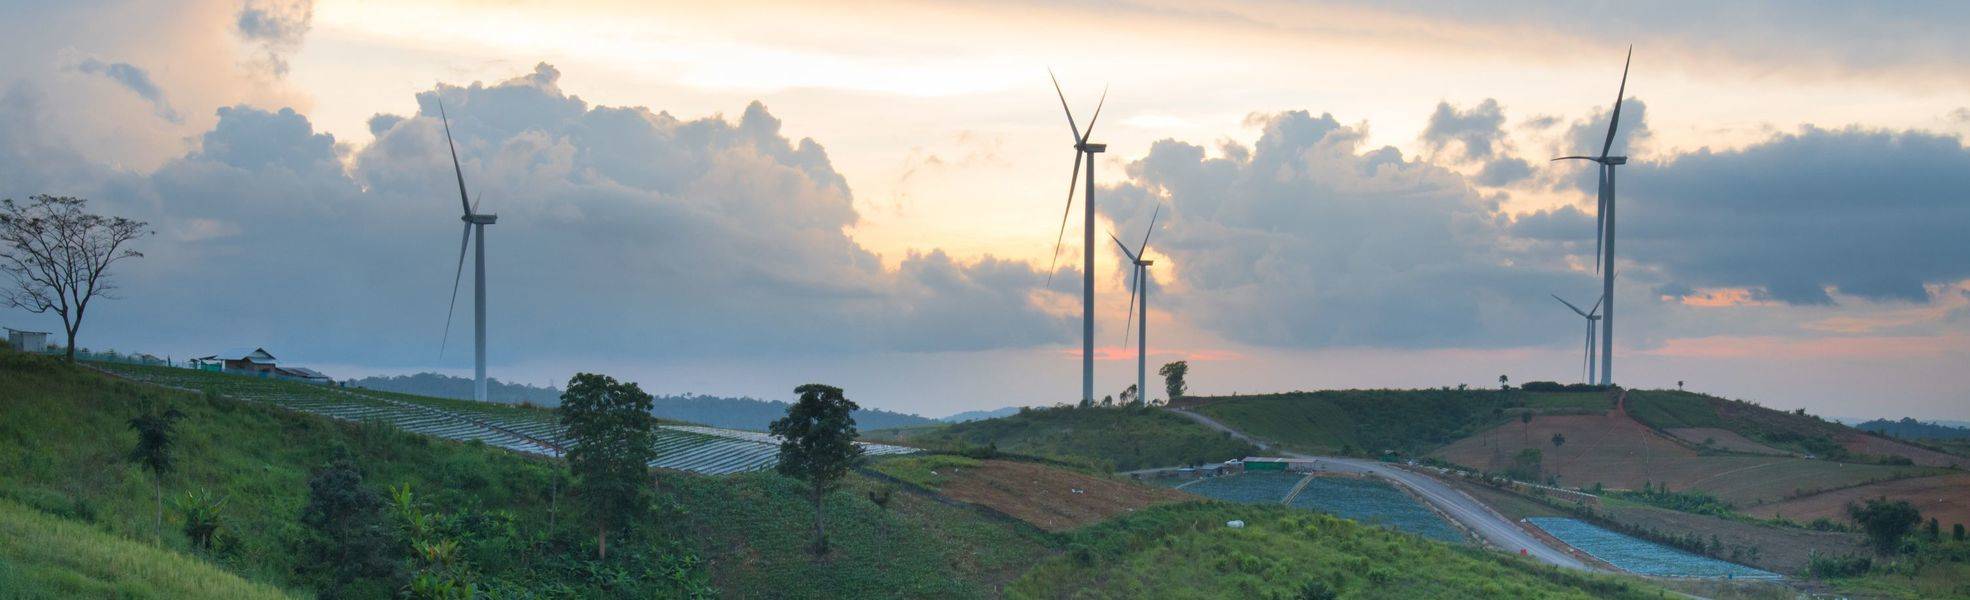 Windräder - Freiwilligenarbeit im Bereich Erneuerbare Energien